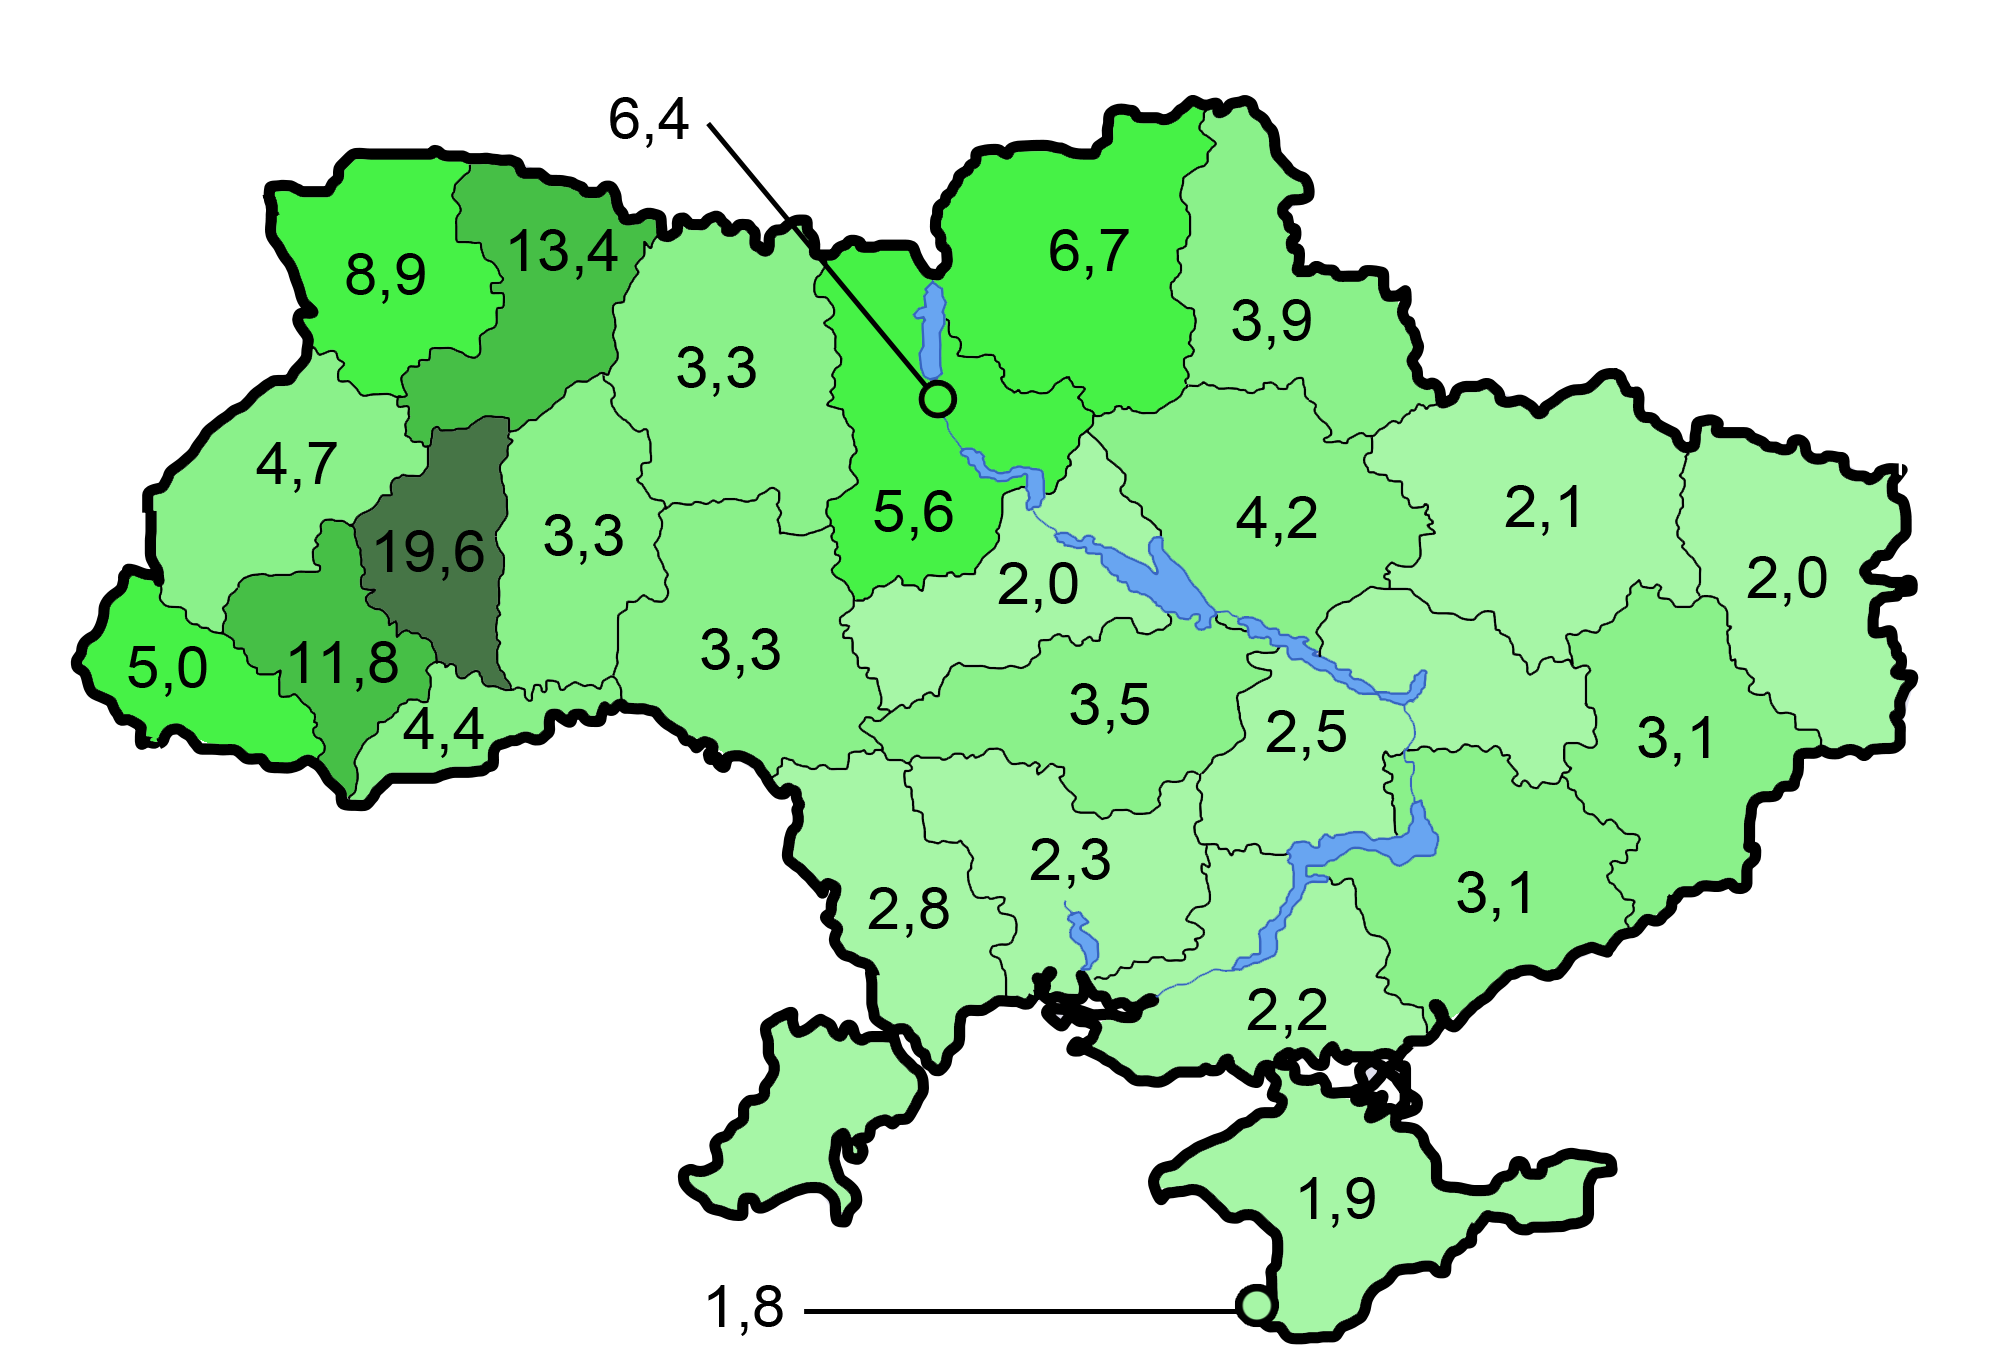 Украина 1991 год карта. Границы Украины 1991 карта. Границы Украины 1991 года на карте. Карта Украины 1991 года. Границы Украины до 1991 года на карте.